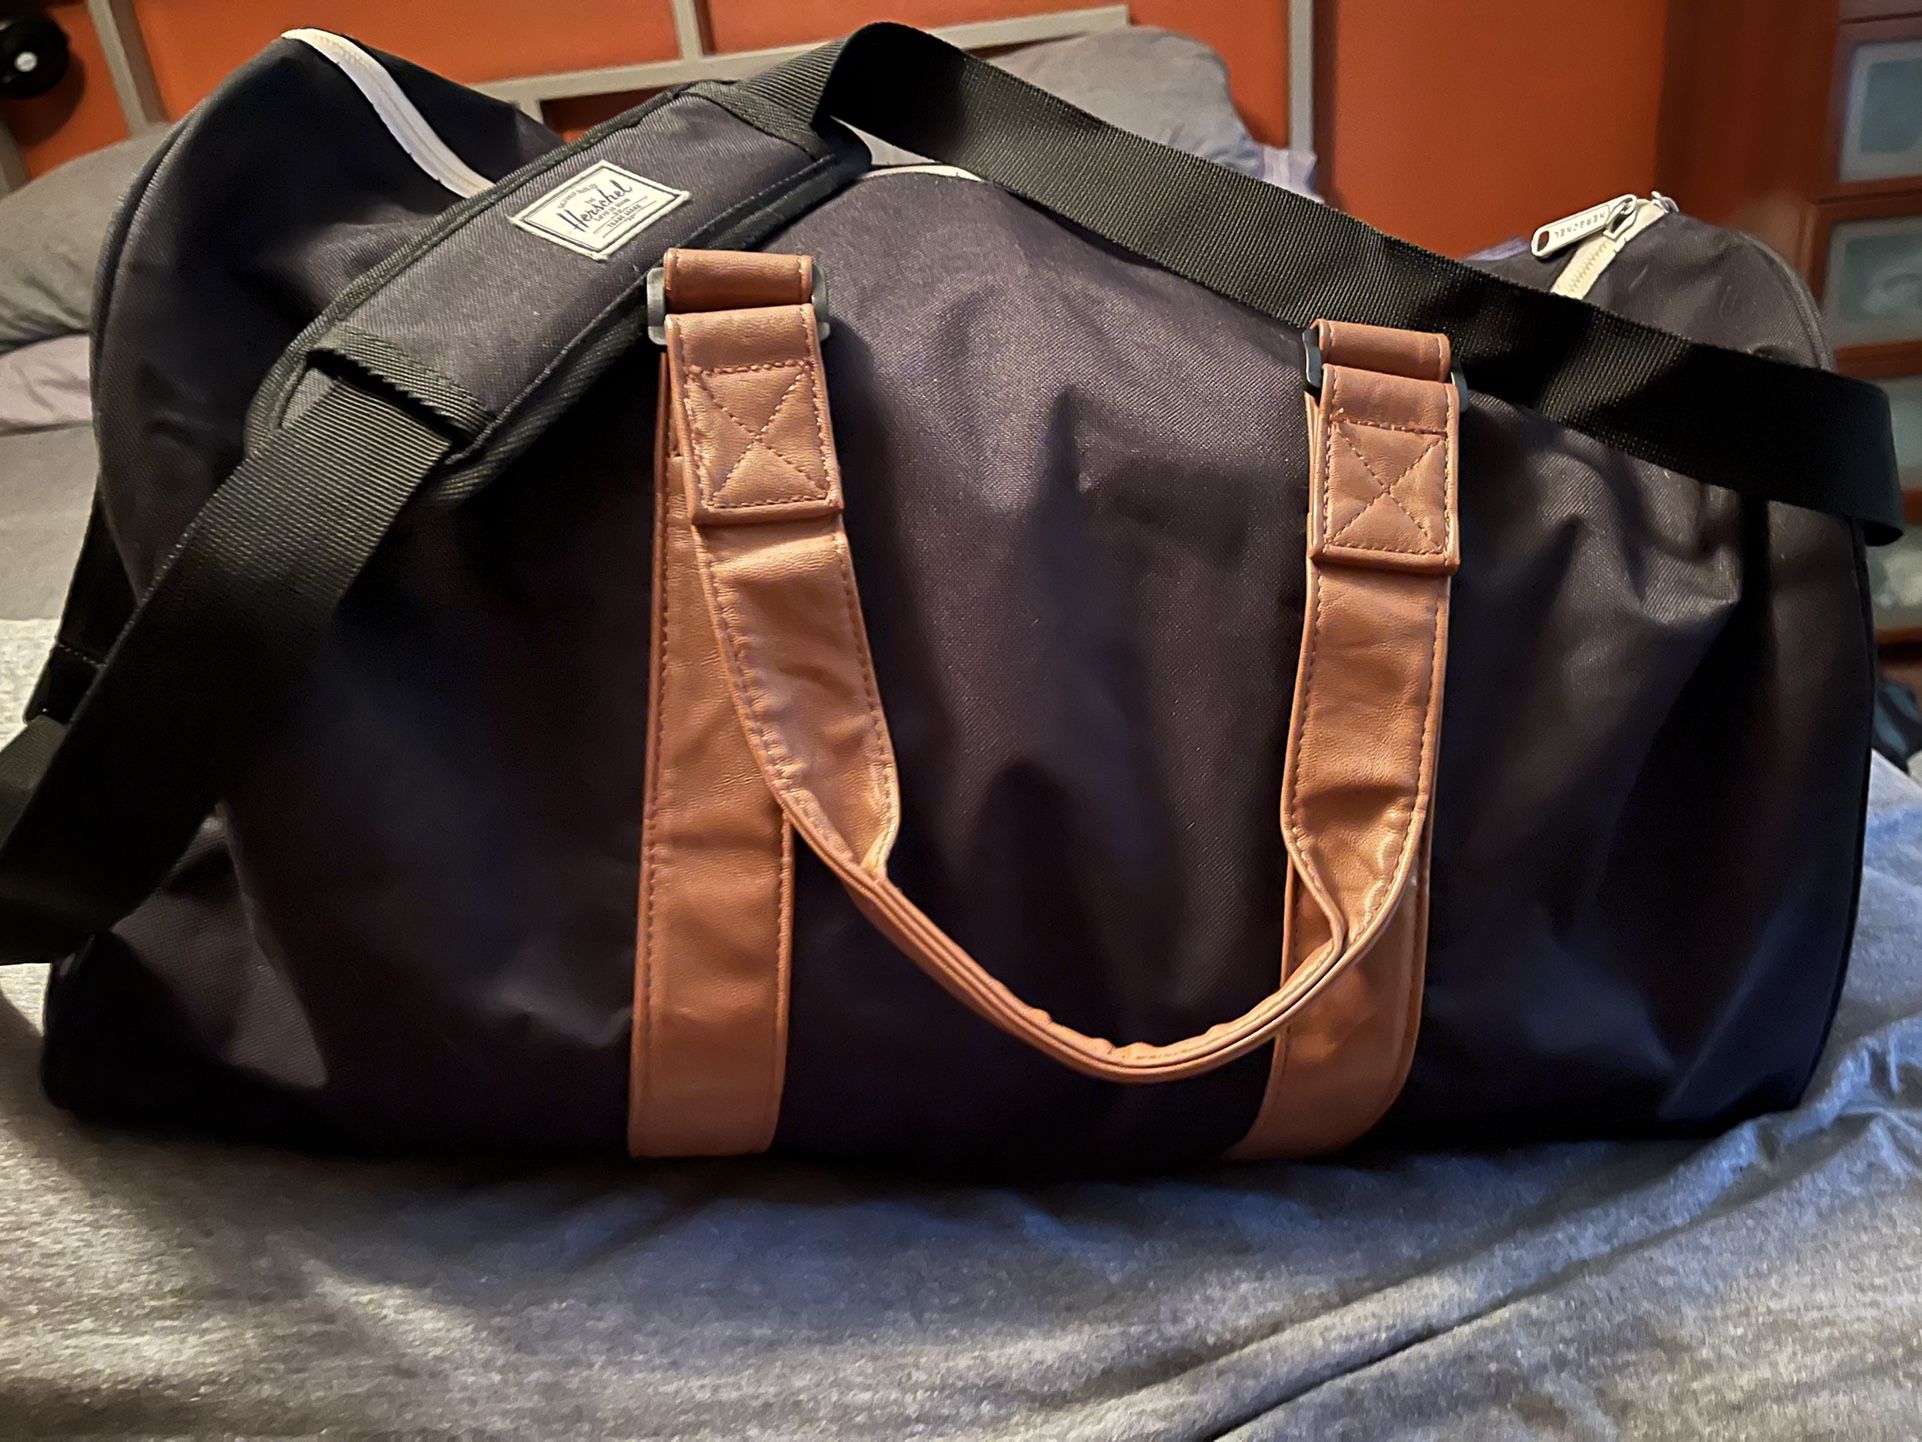 Herschel Duffle Bag